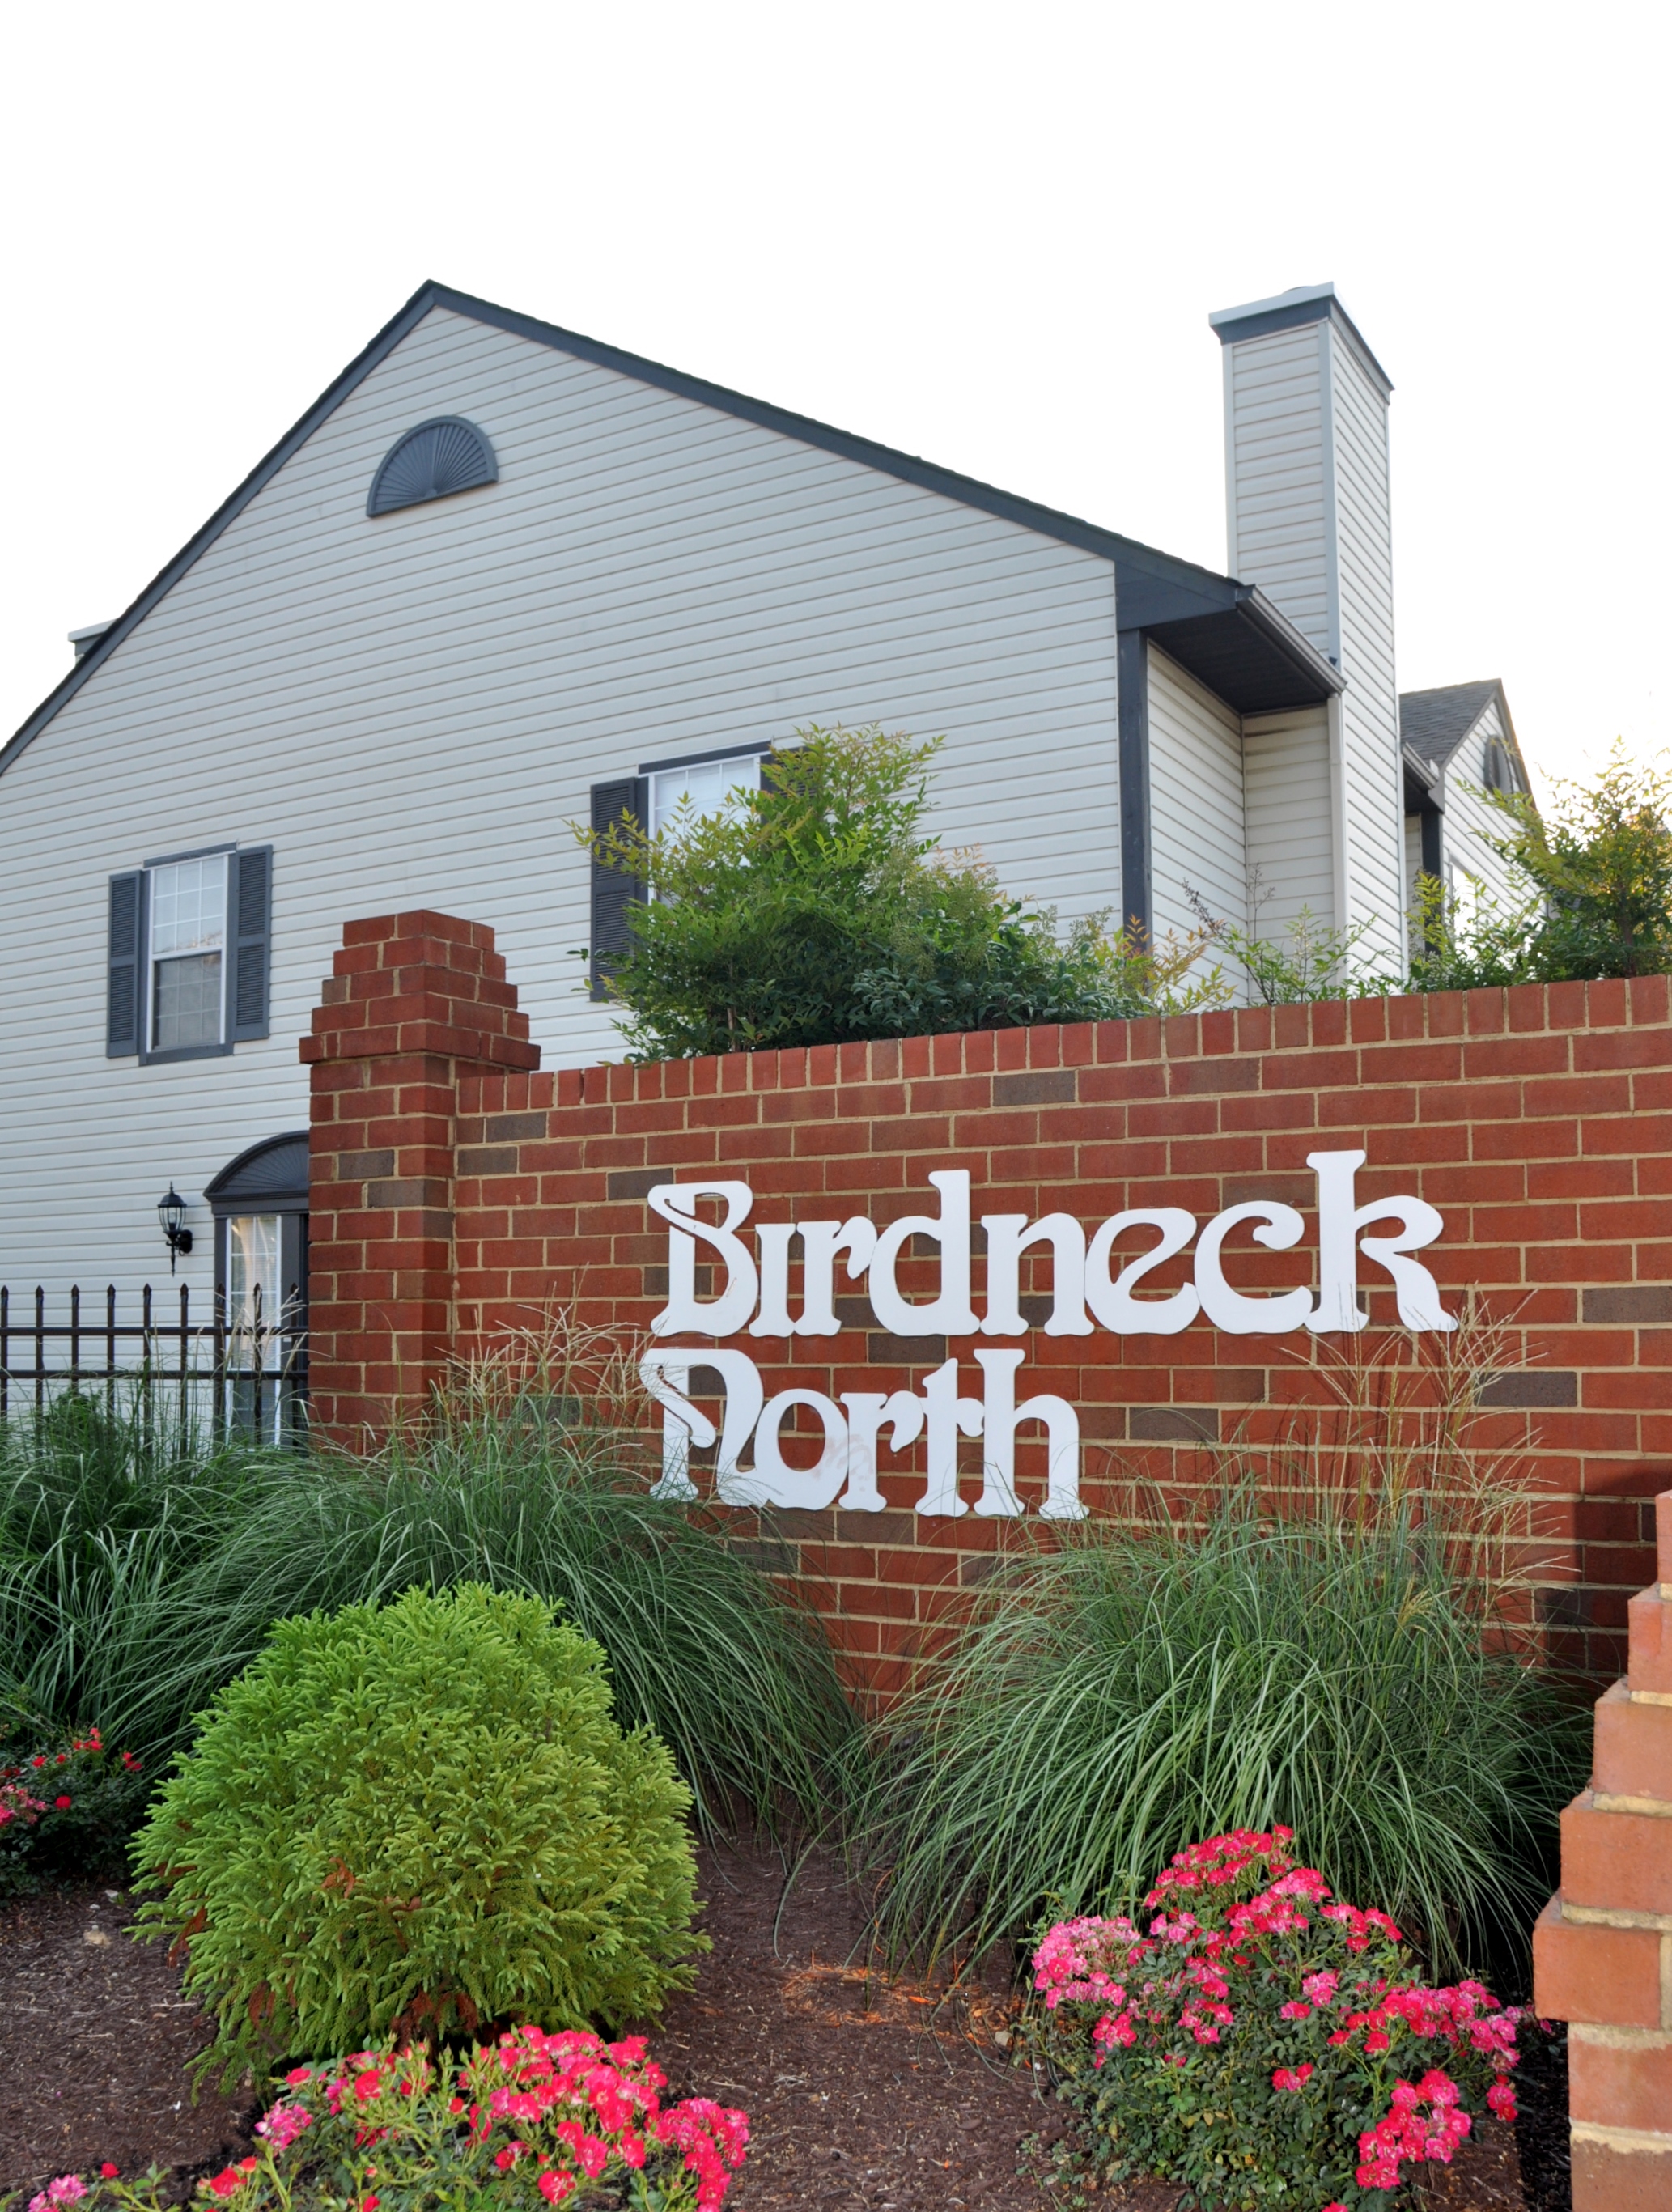 Birdneck North Condominium Association | Community Management, Virginia ...